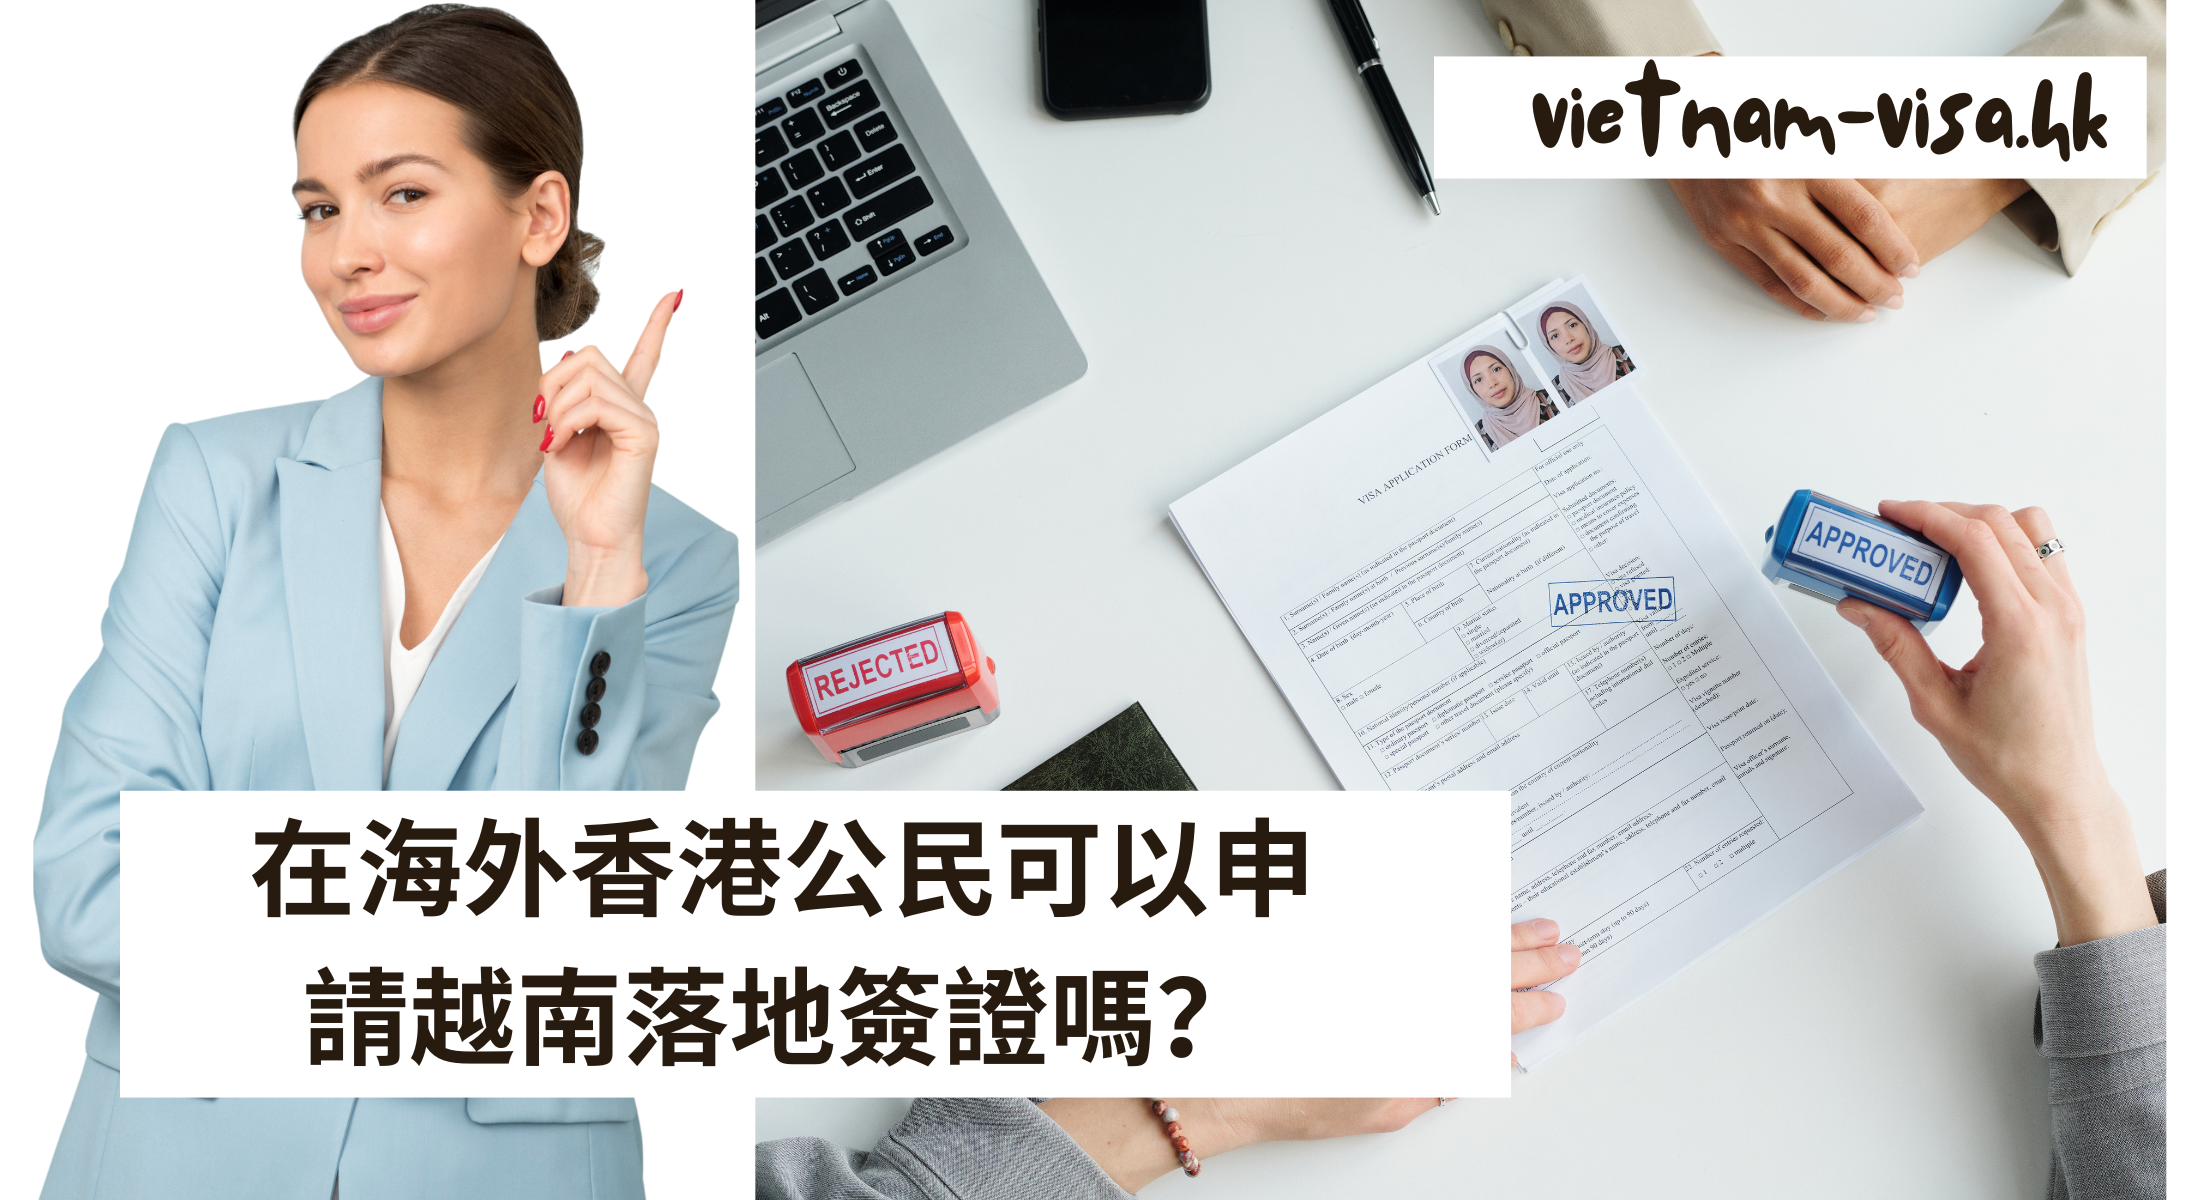 海外香港公民可以申請越南落地簽證嗎？